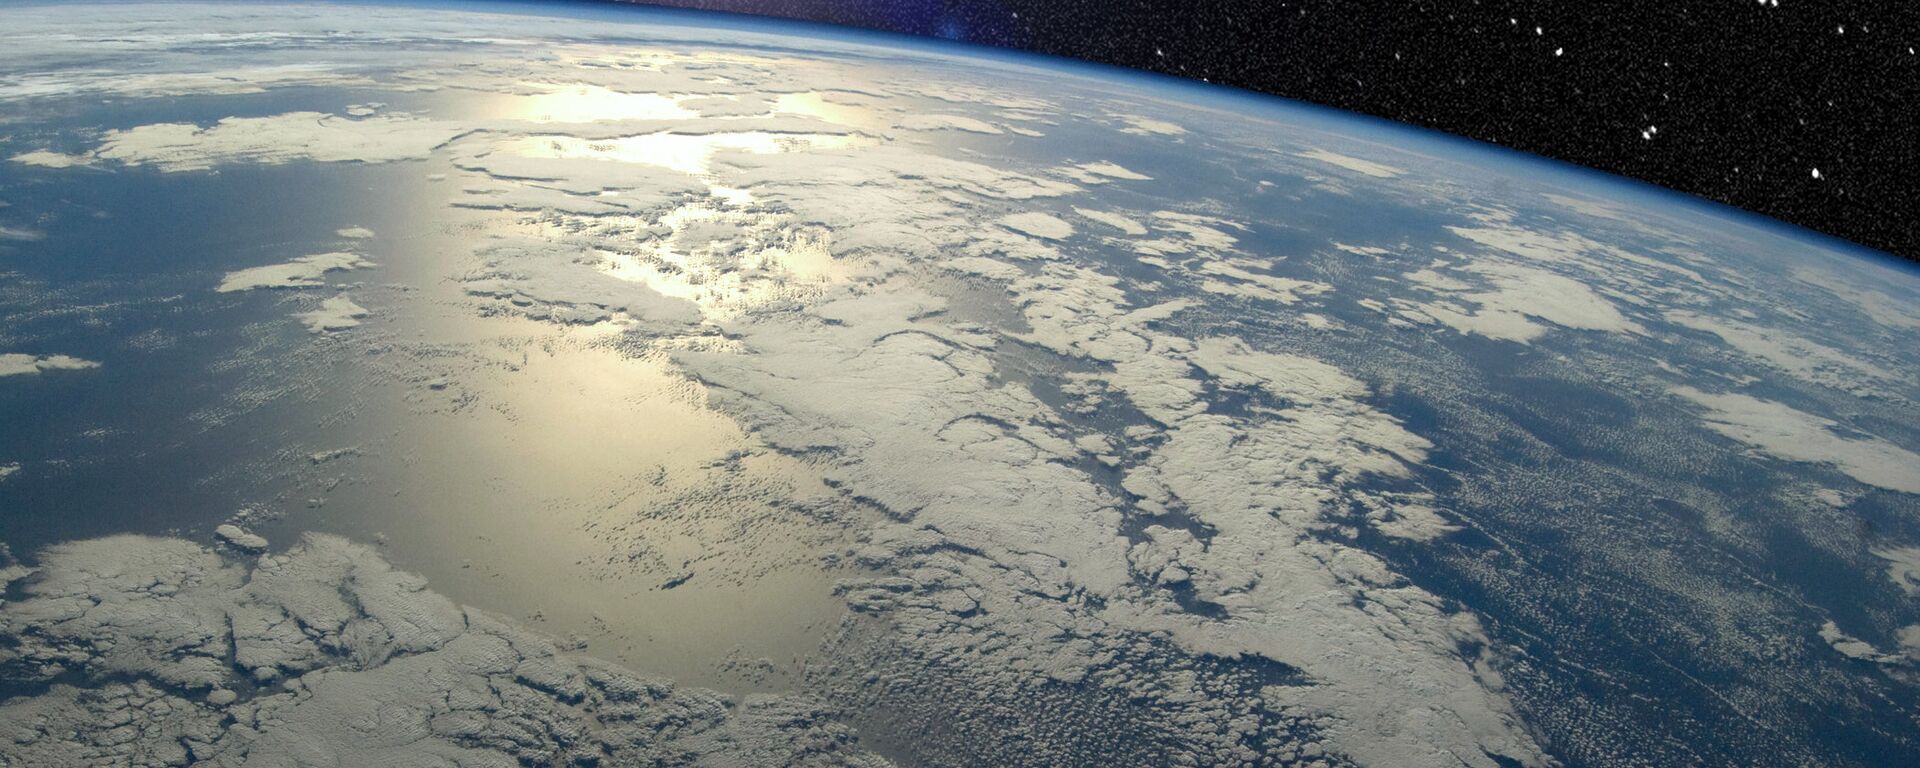 Vista de la Tierra desde el espacio (archivo) - Sputnik Mundo, 1920, 09.03.2021